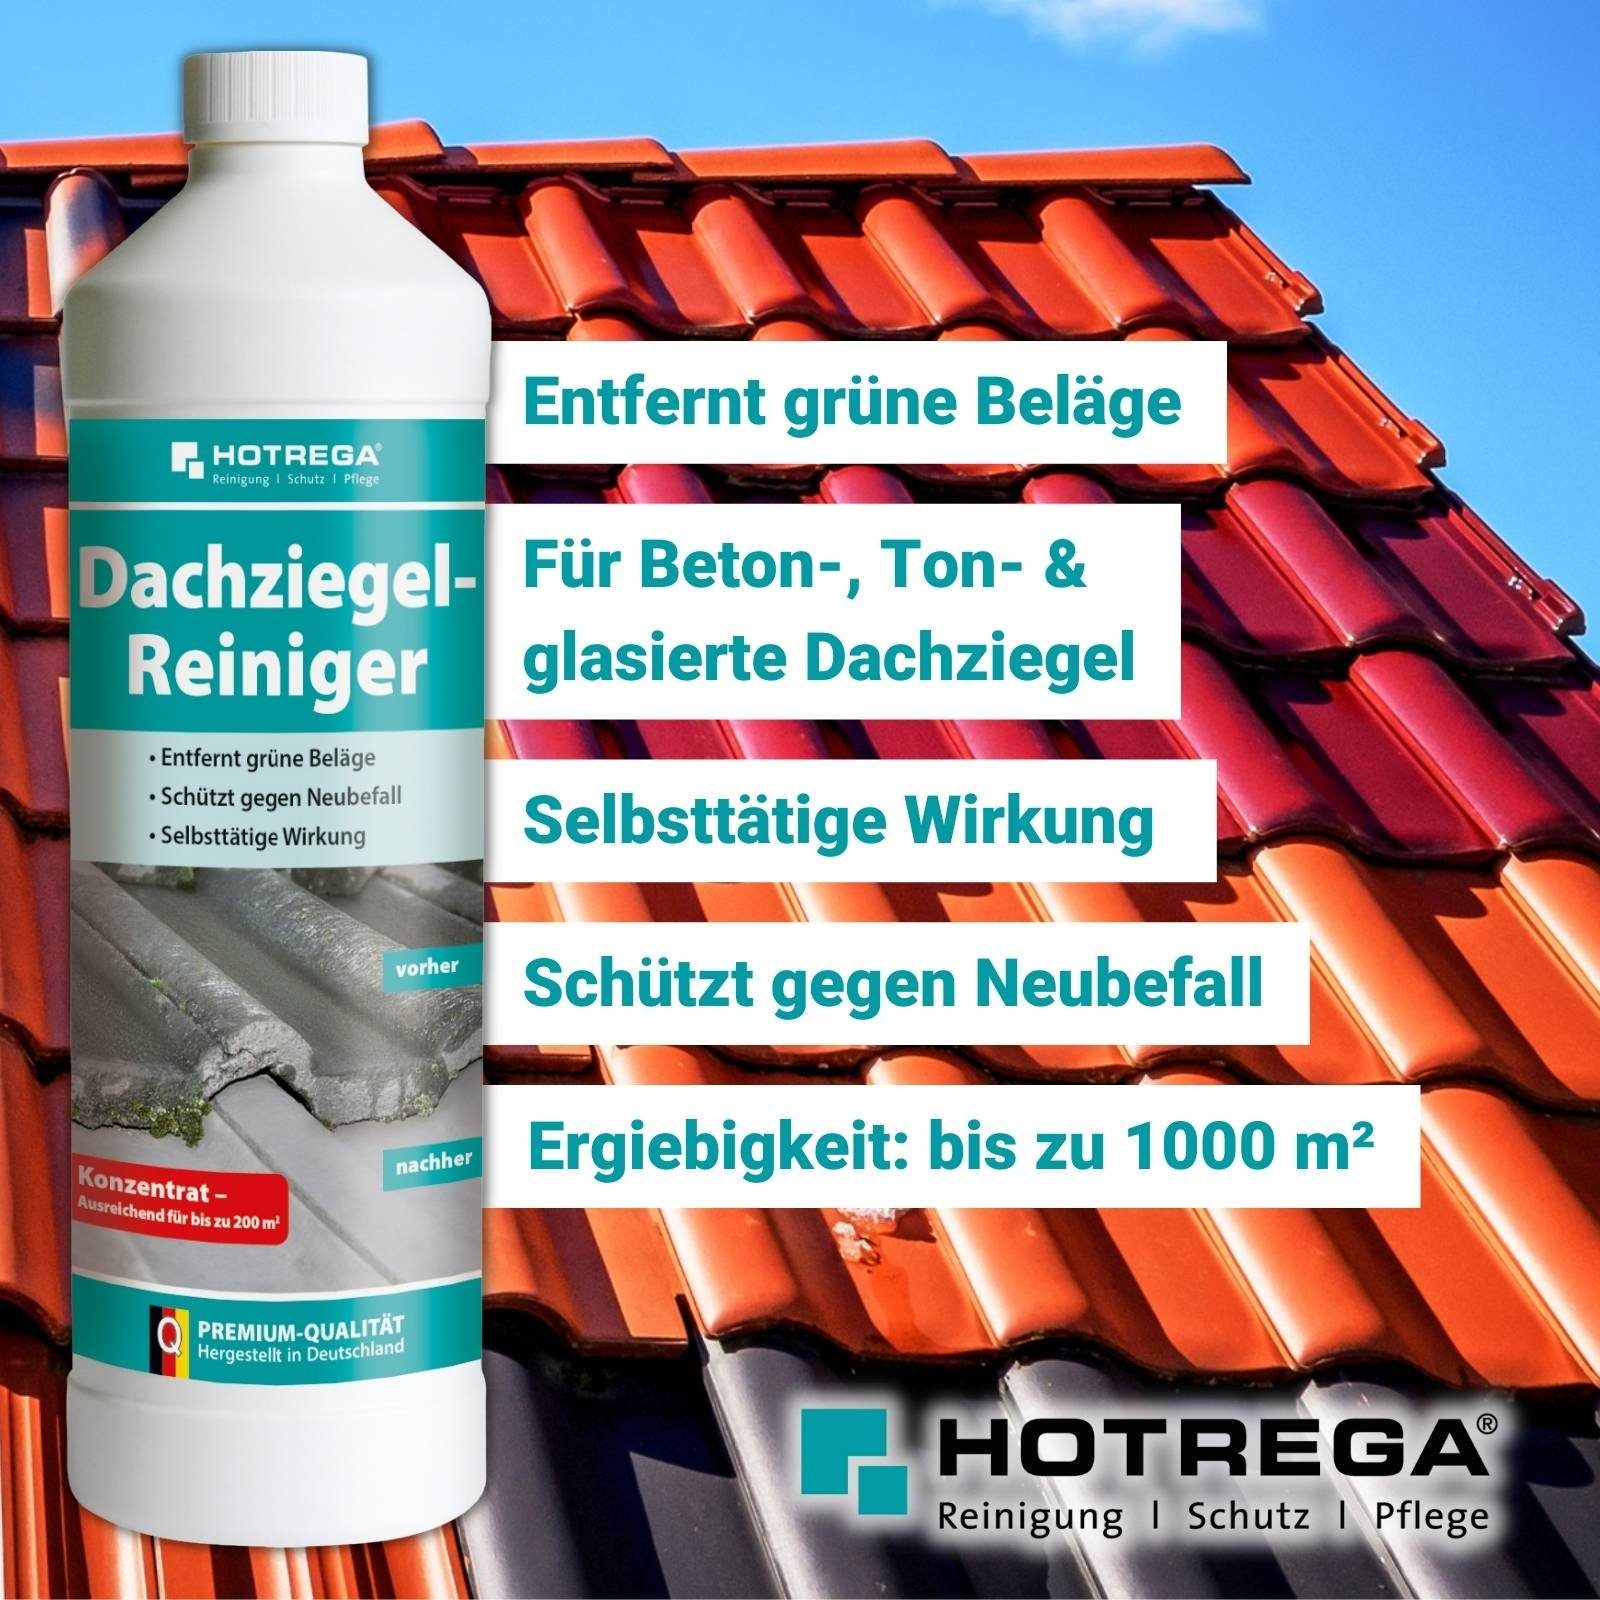 Konzentrat Liter Reiniger 1 Dachziegel HOTREGA® Reinigungskonzentrat